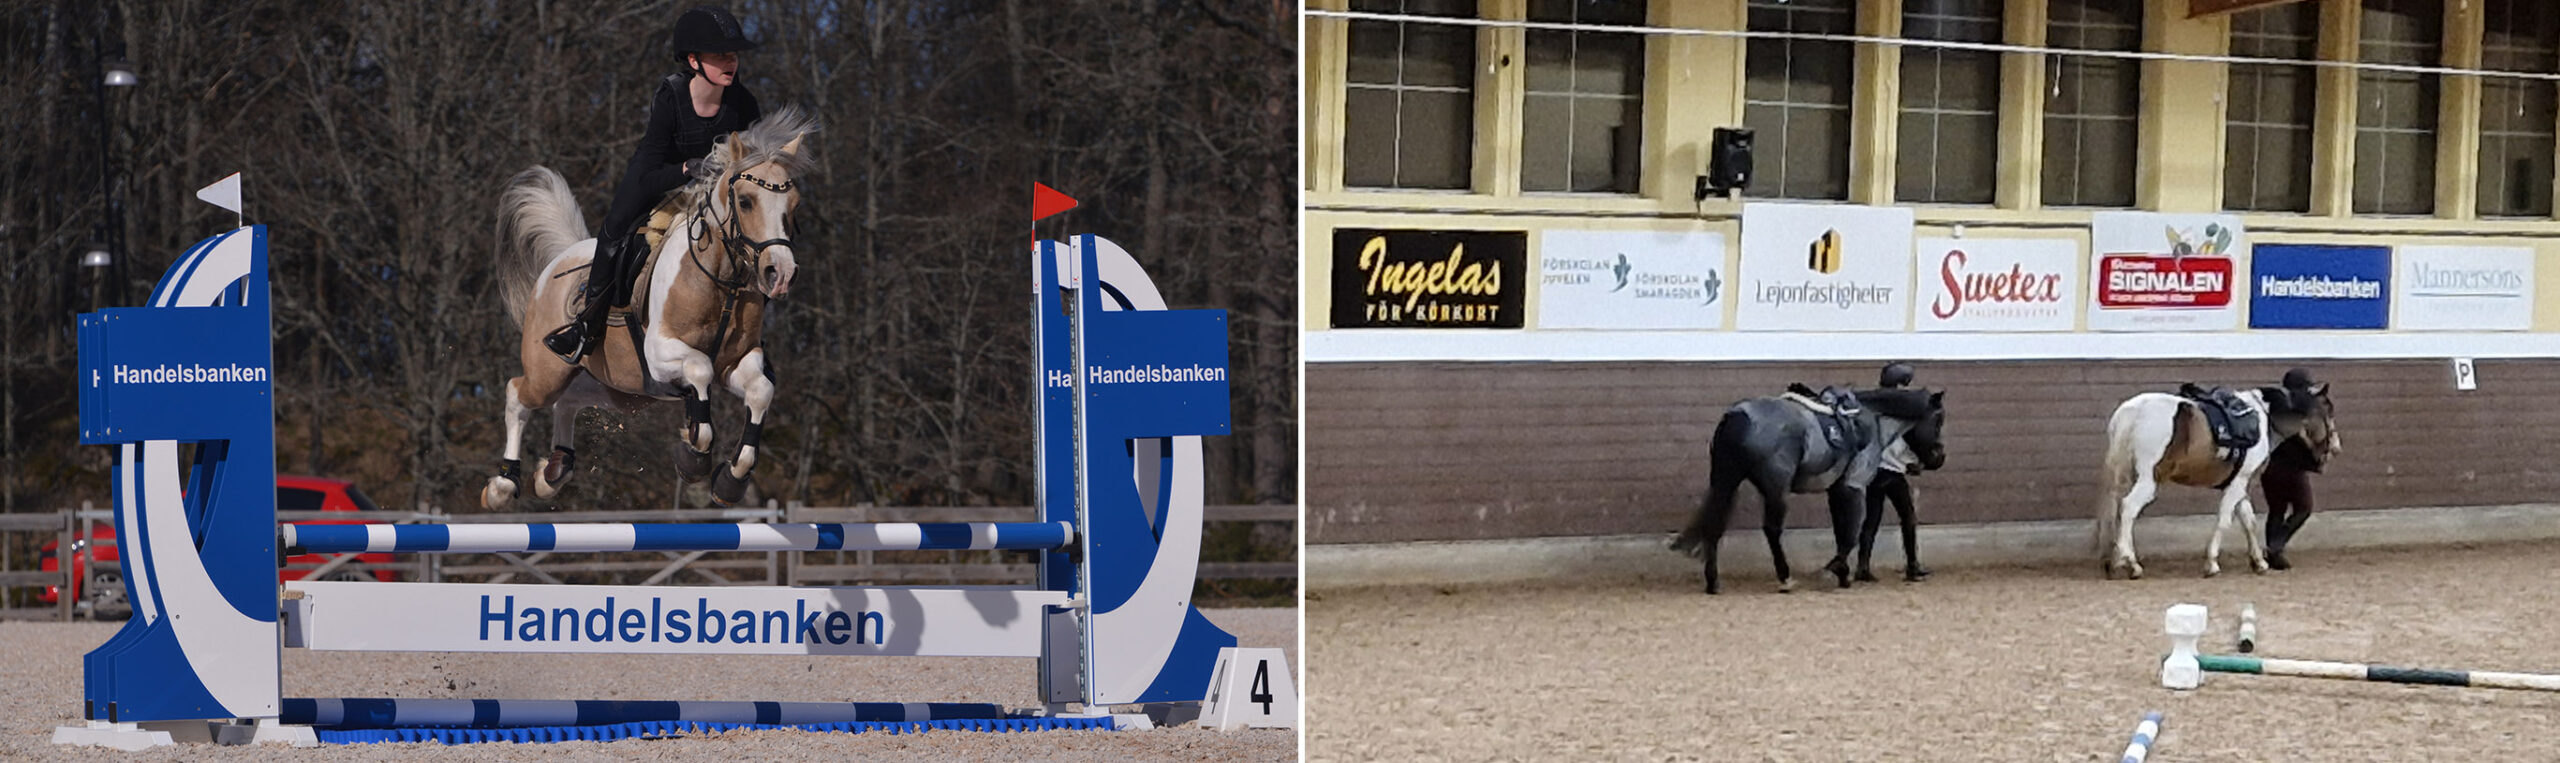 Skäck hoppar över handlesbankenhinder - hästar leds framför skyltvägg på Smedstad Ridsportcenter.